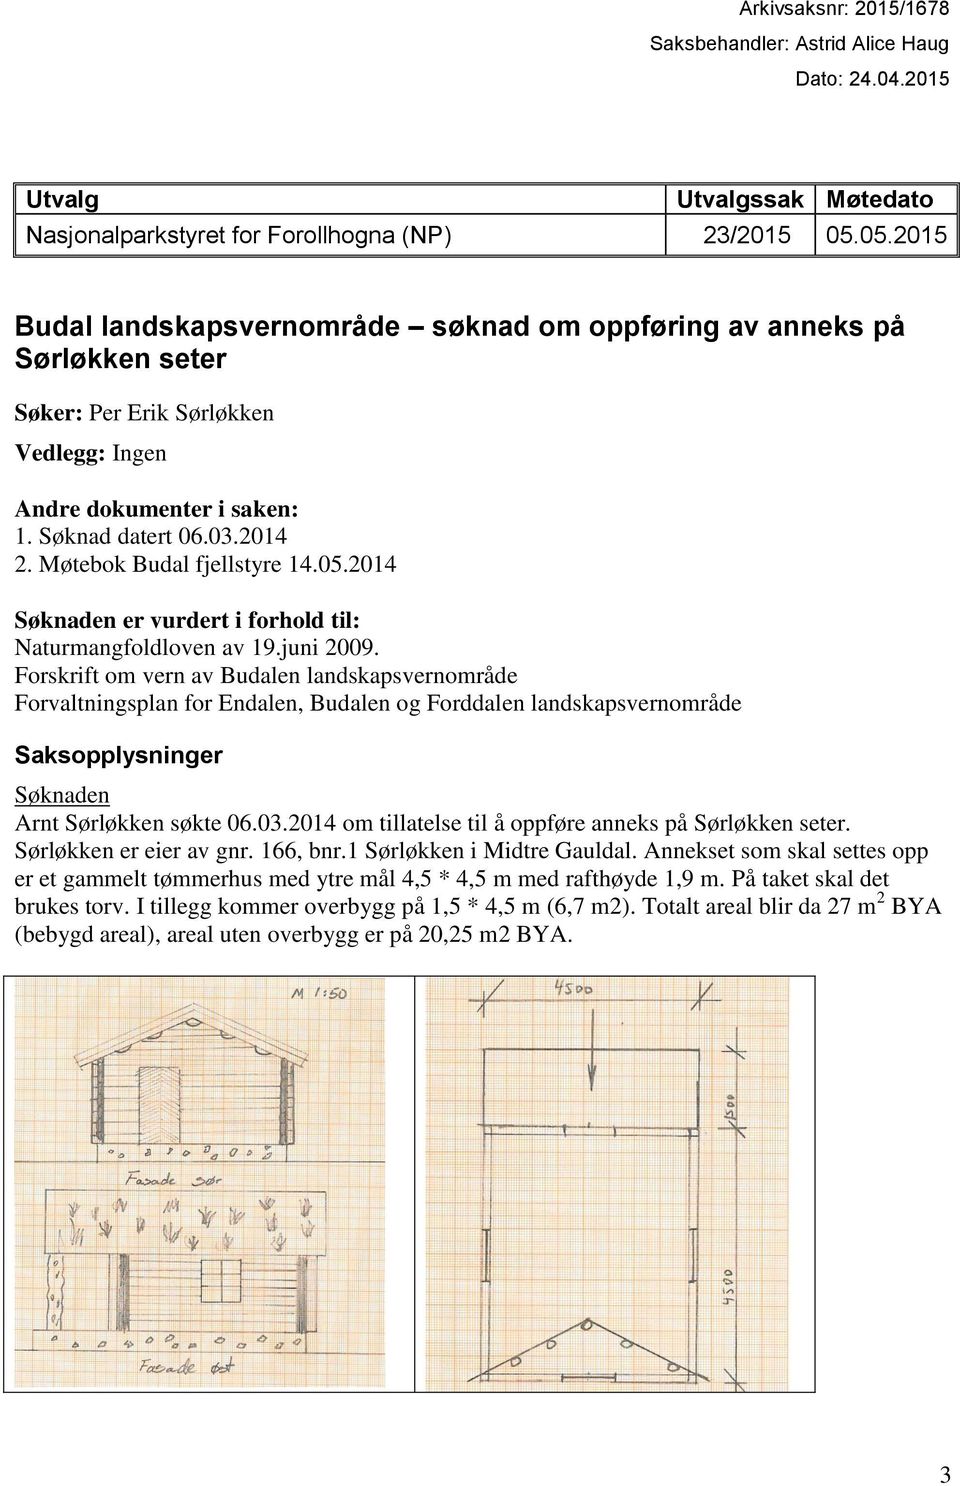 Møtebok Budal fjellstyre 14.05.2014 Søknaden er vurdert i forhold til: Naturmangfoldloven av 19.juni 2009.